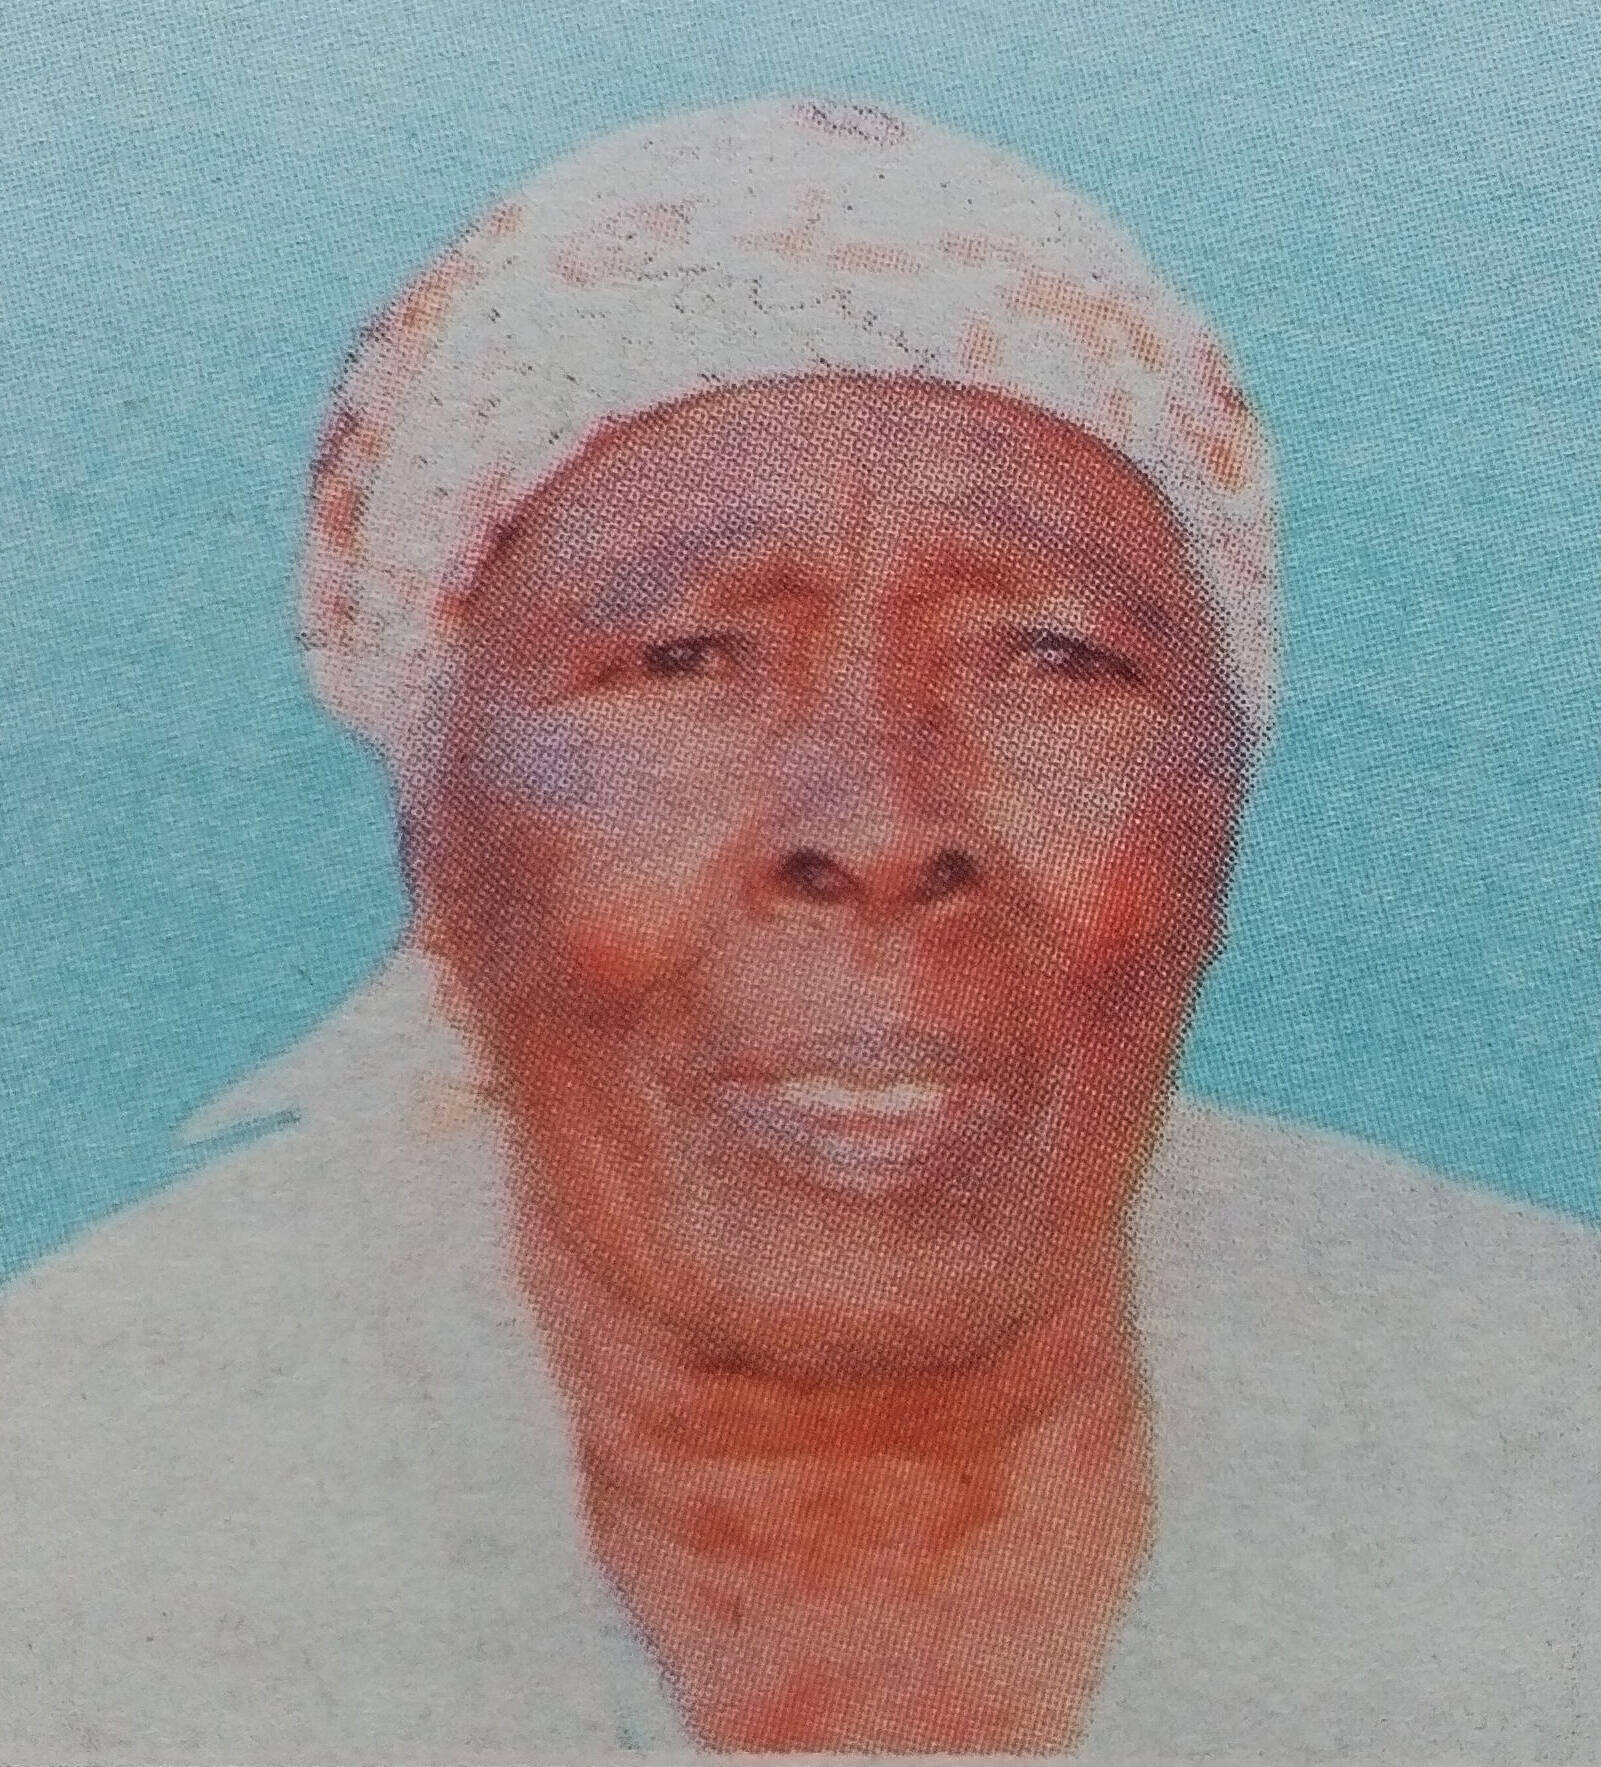 Obituary Image of Margaret Wanjiku Kang'ethe